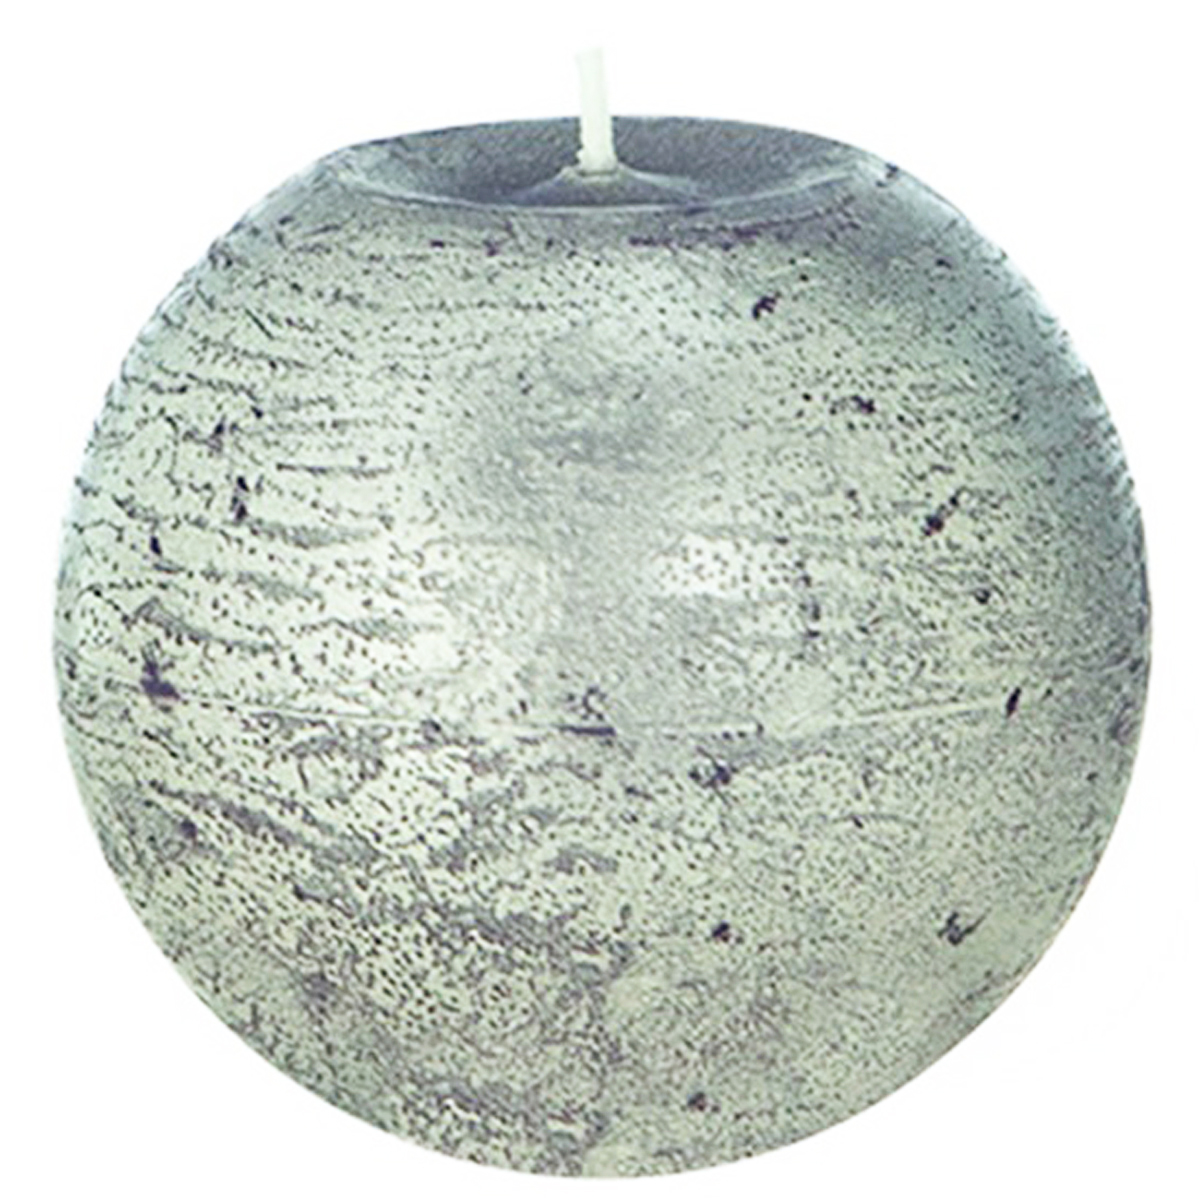 Bougie décorative ronde \'Zen\' argenté vintage - 75 cm - [Q0894]